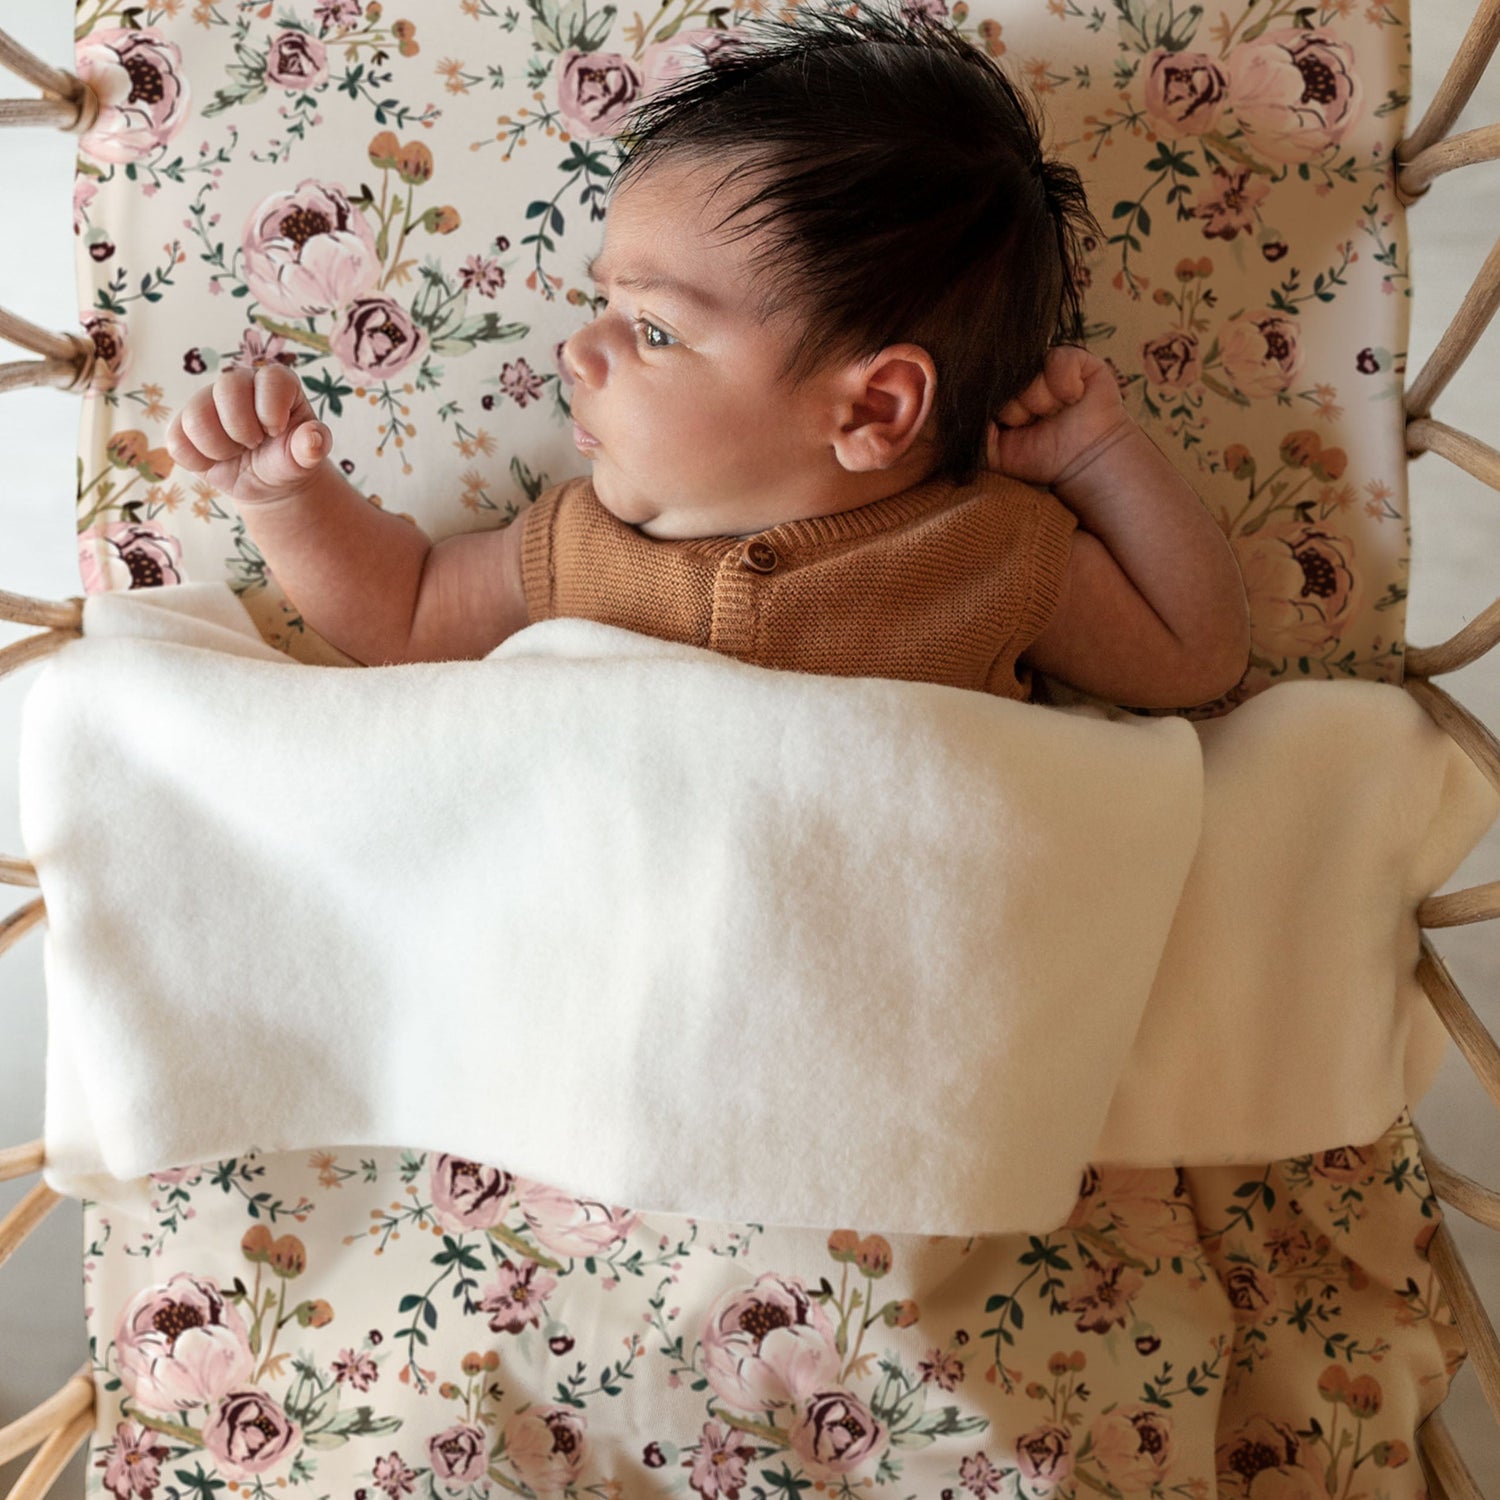 Een vredig kindje rustend in een knus mandje, omringd door een Yumi Baby handgemaakt ontwerp van Ledikantdeken Blamy deken, gekleed in een warme gebreide outfit.